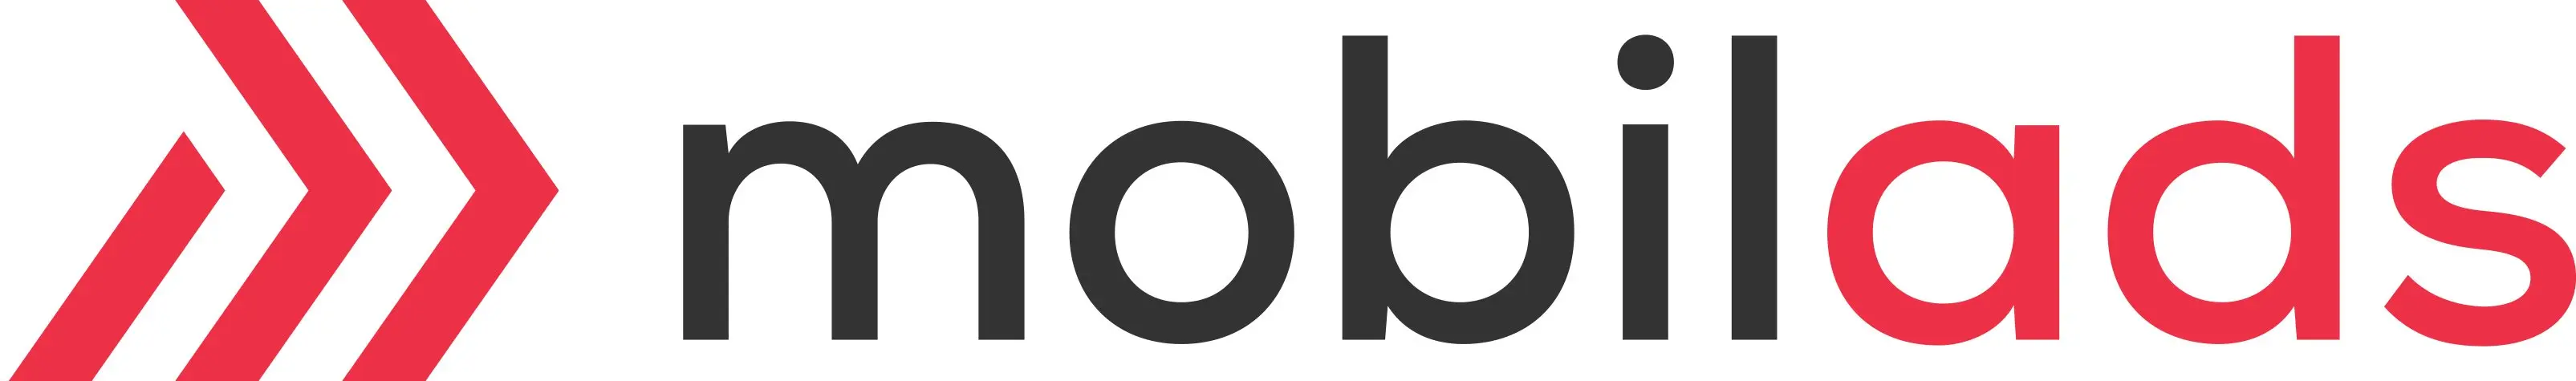 mobilads-logo-3